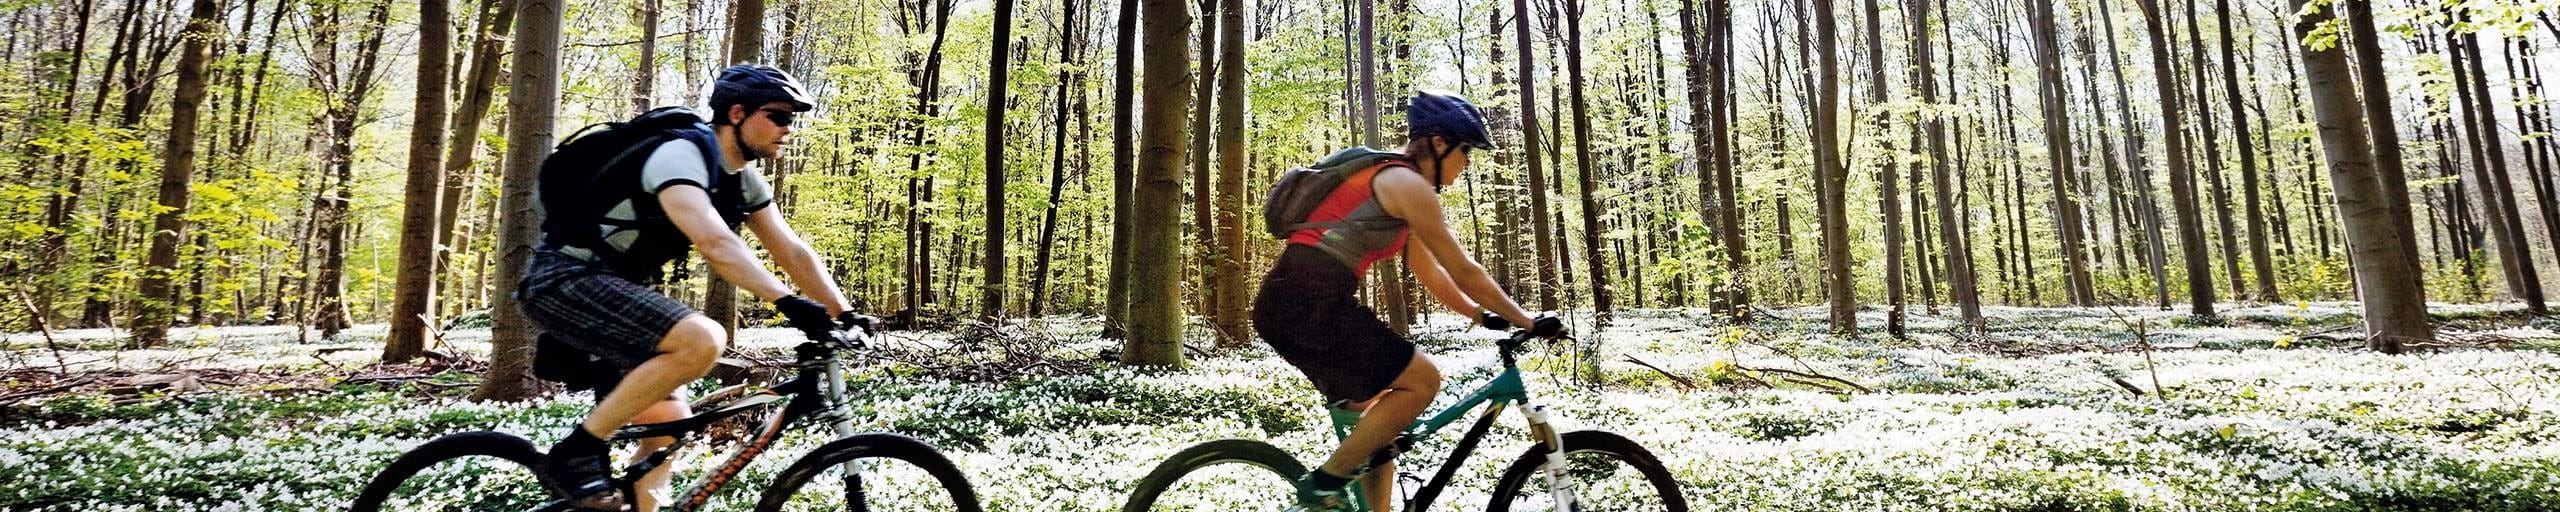 Due persone attraversano un bosco con la mountain bike.